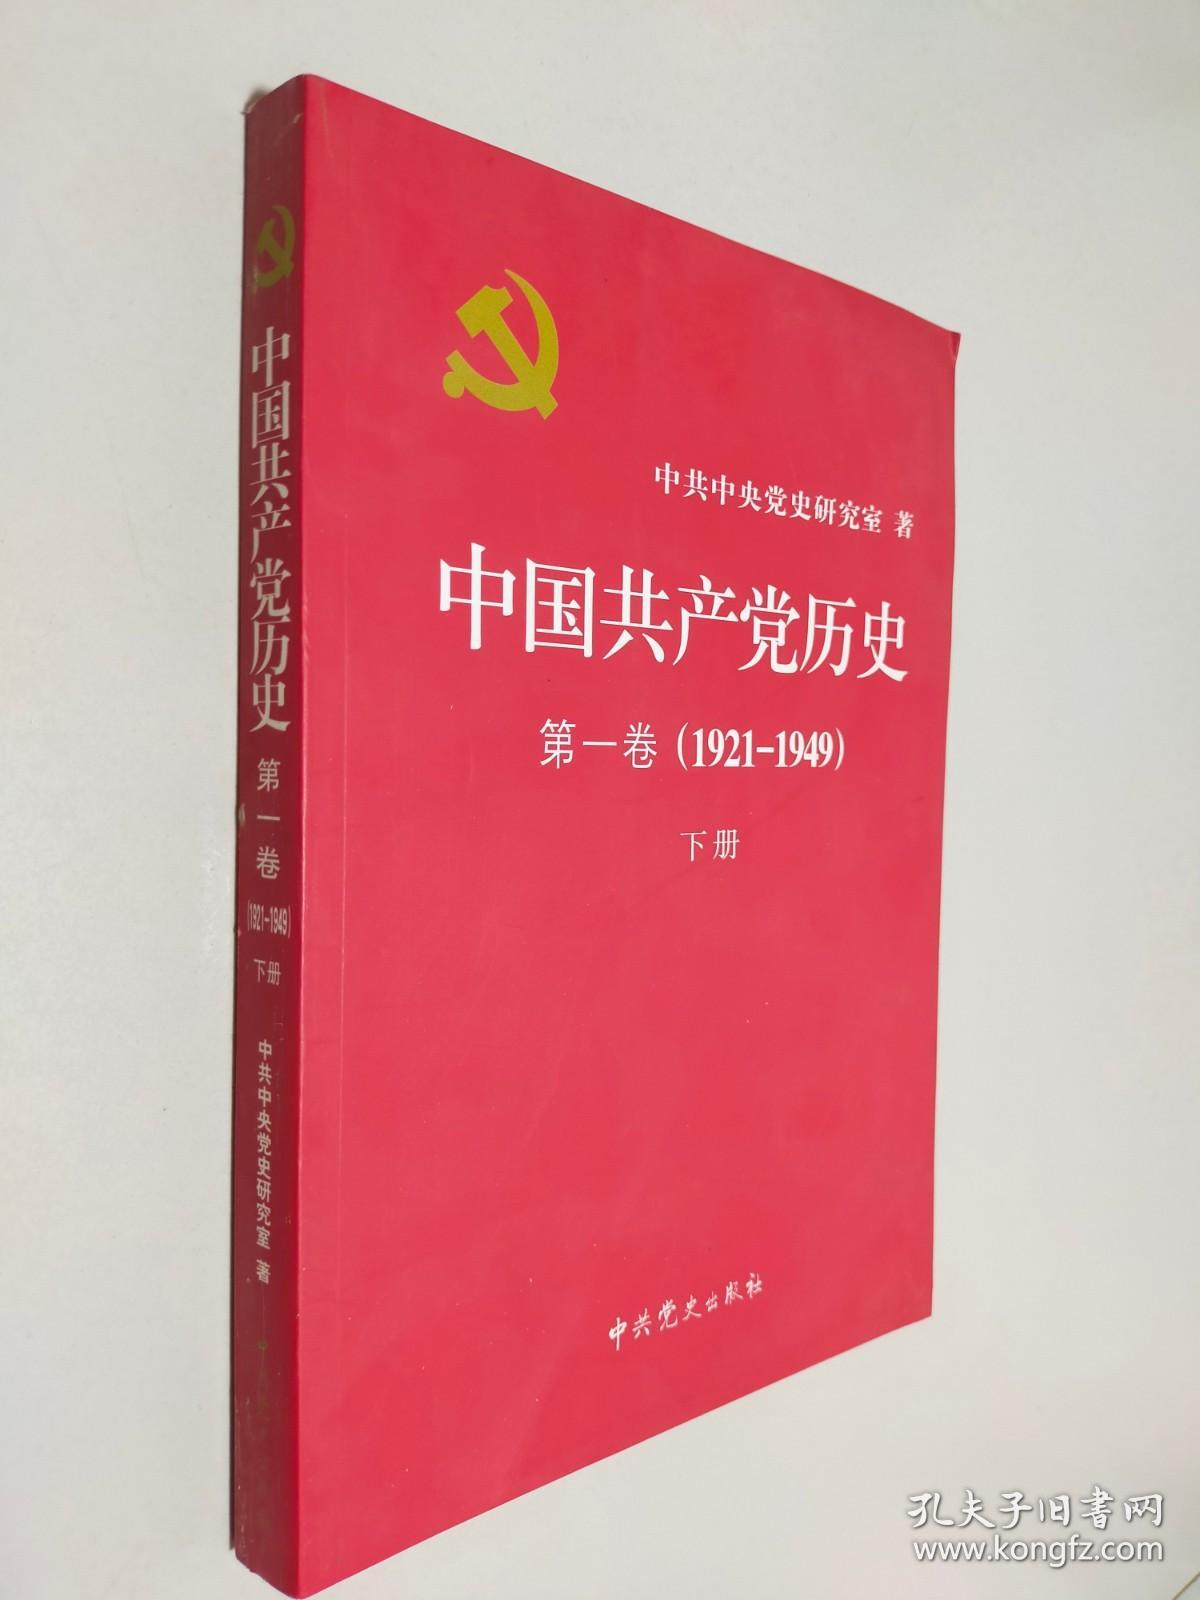 中国共产党历史:第一卷(1921—1949)（下册）